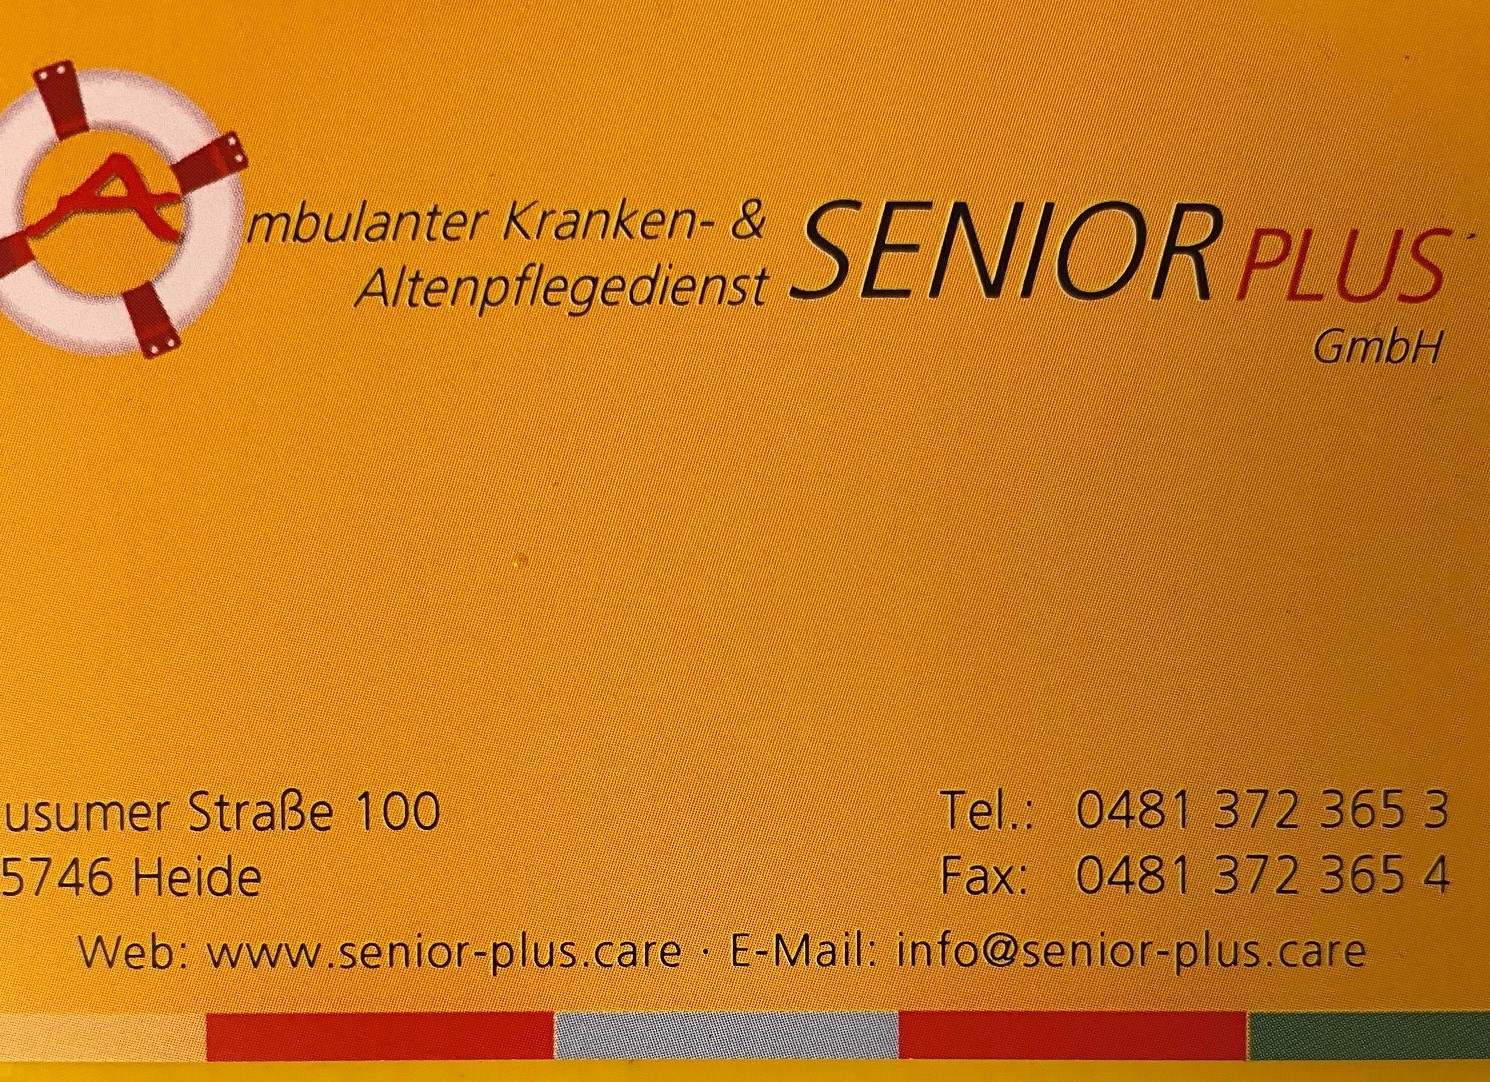 Bild 3 Ambulanter Kranken- & Altenpflegedienst Senior Plus GmbH in Heide